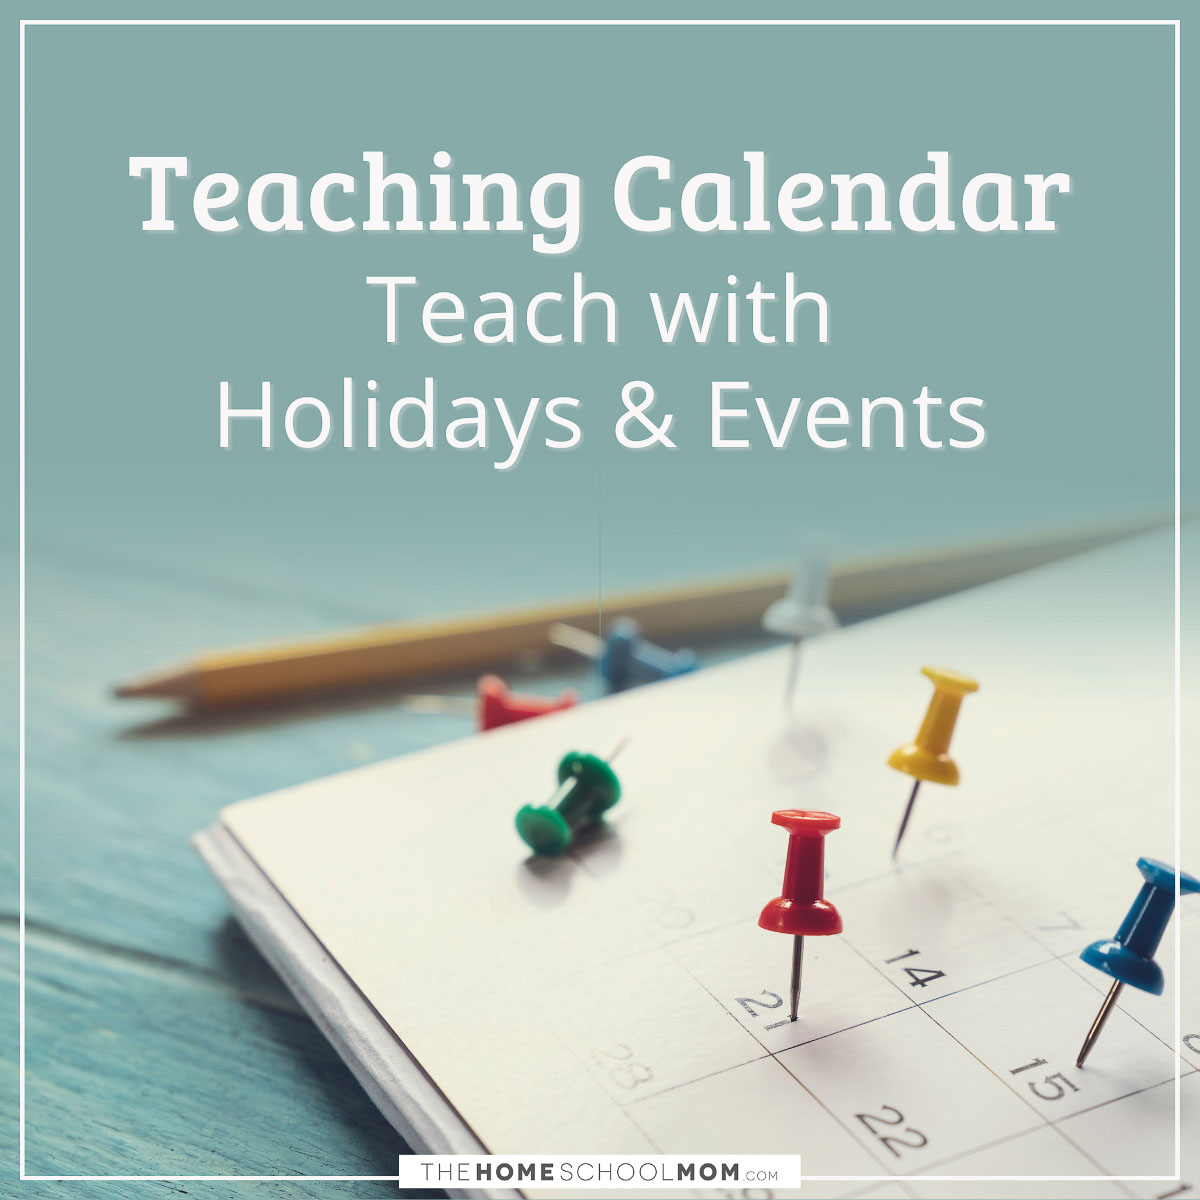 Teaching calendar - teach with holidays and events.